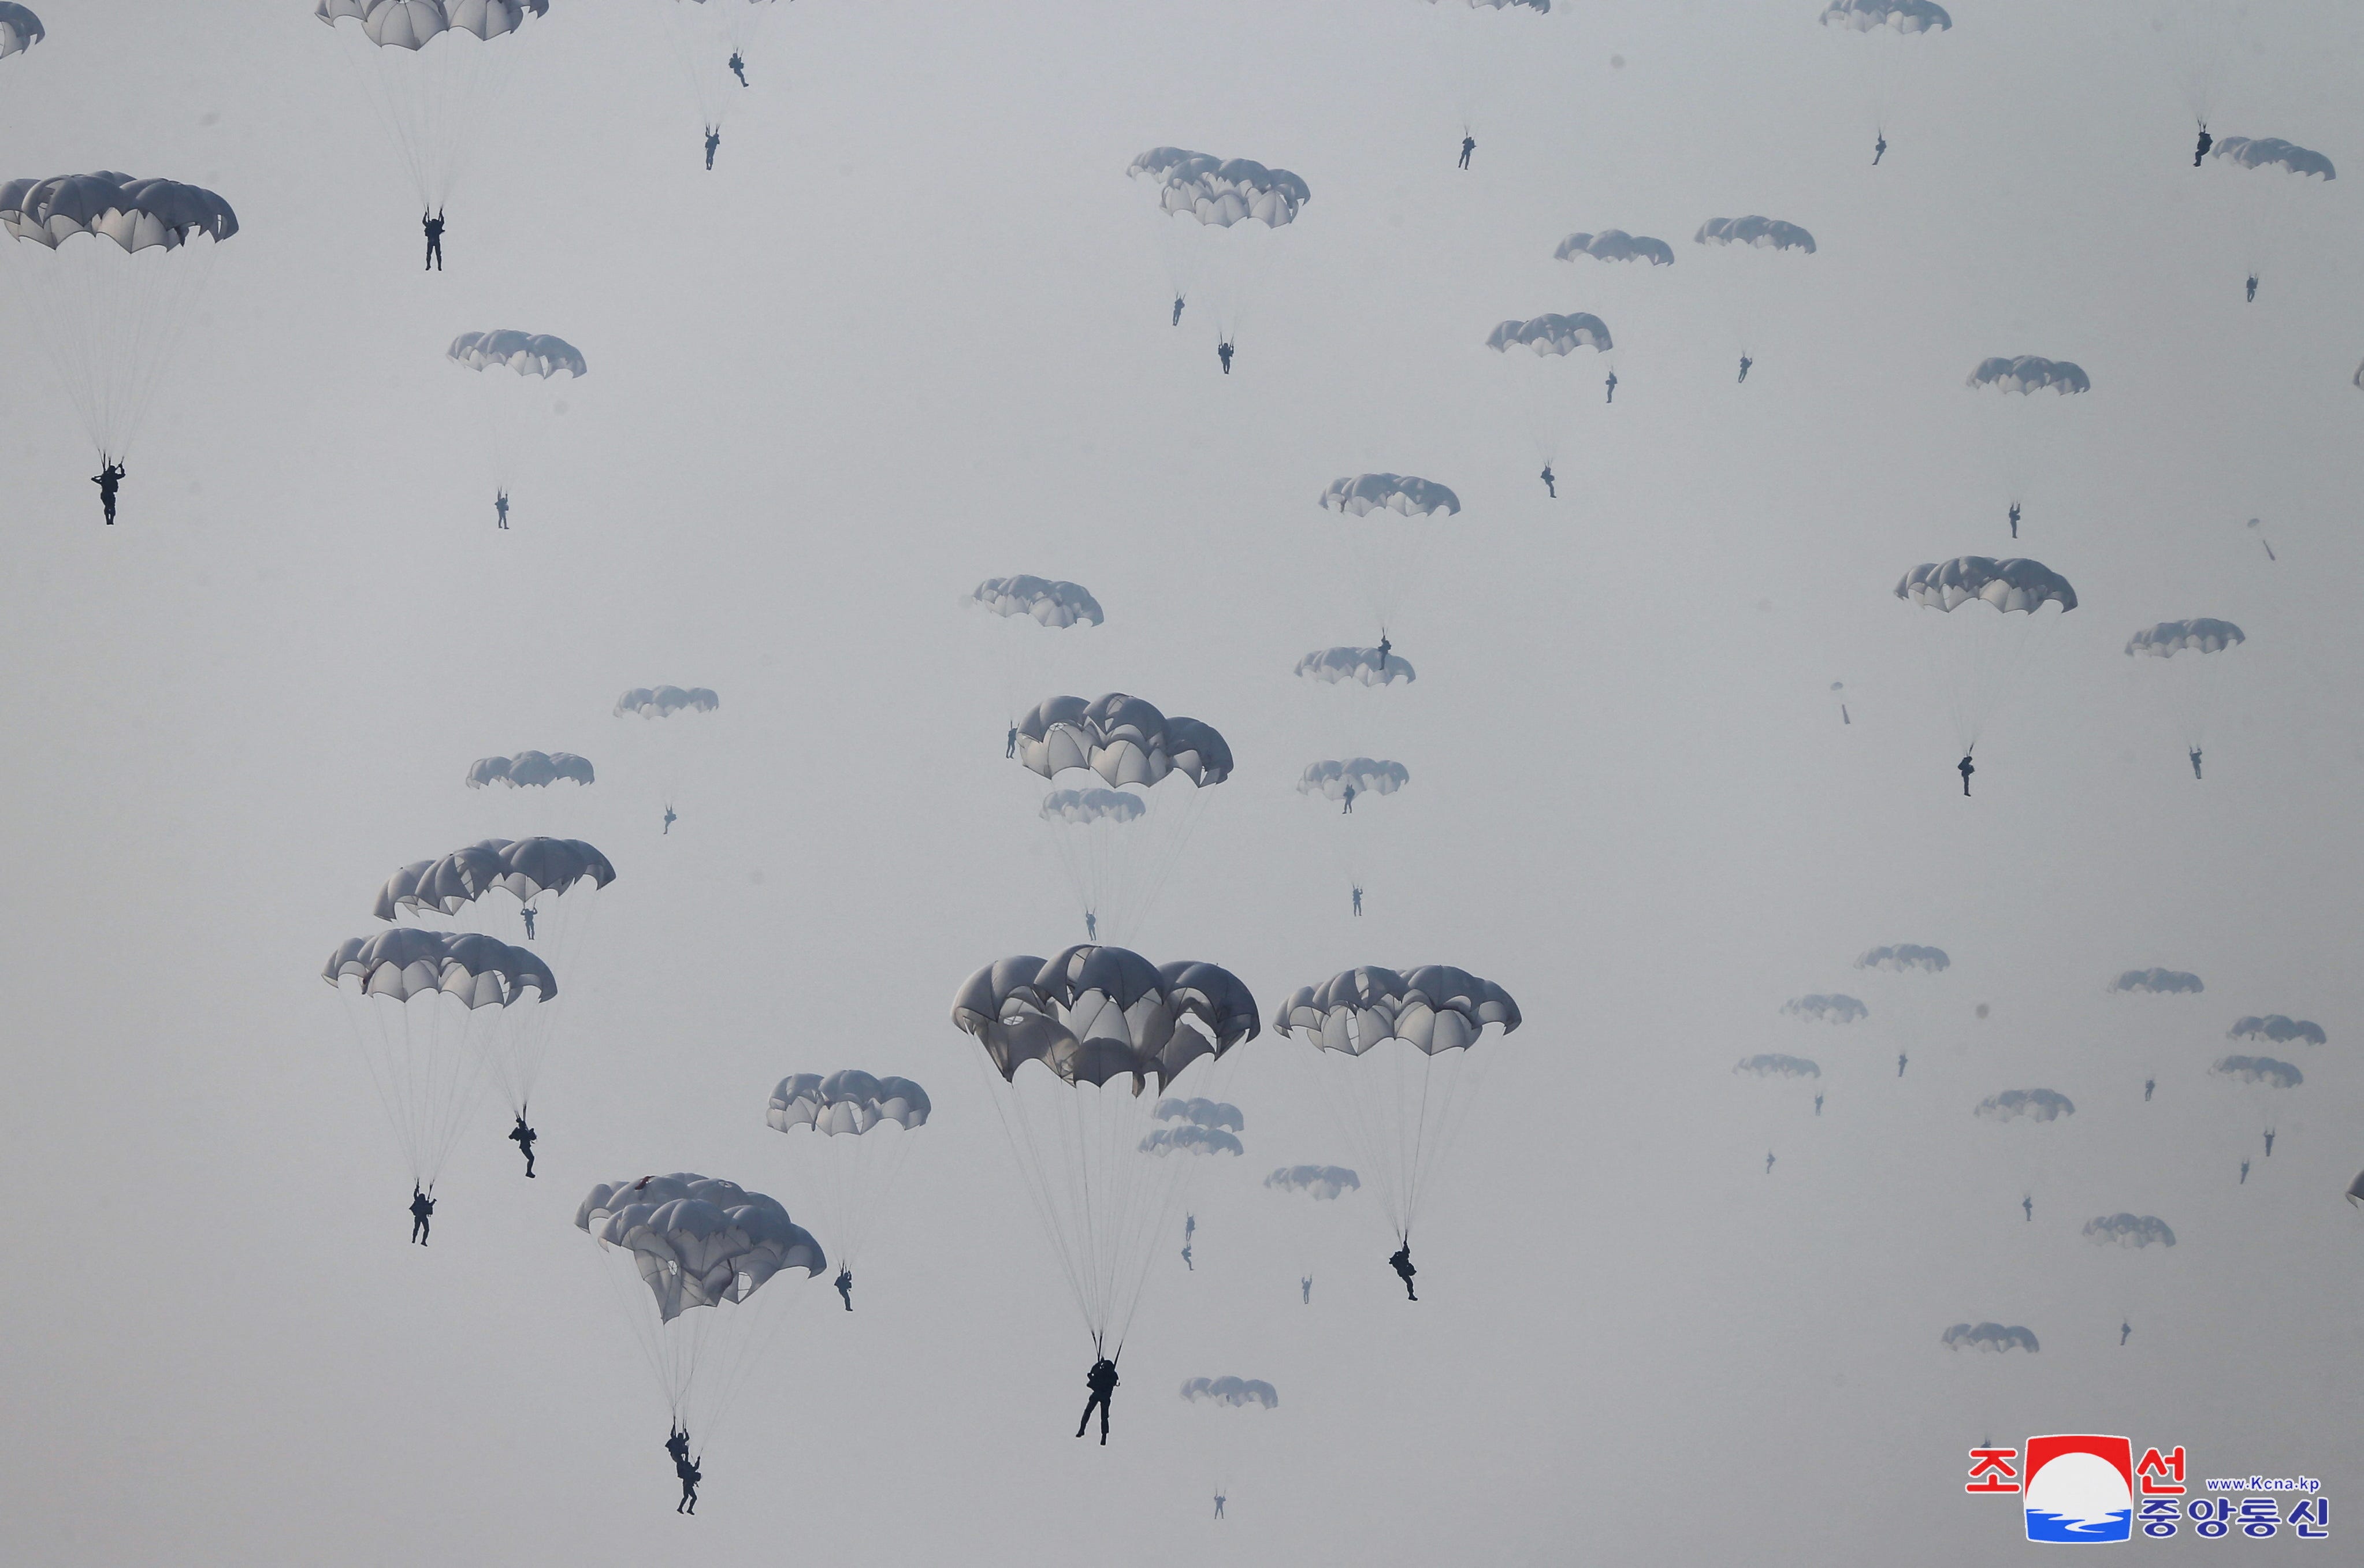 Während einer Demonstration während der Ausbildung der Luft- und Amphibienkampfeinheiten der Koreanischen Volksarmee werden Soldaten beim Fallschirmspringen am Himmel gesehen.